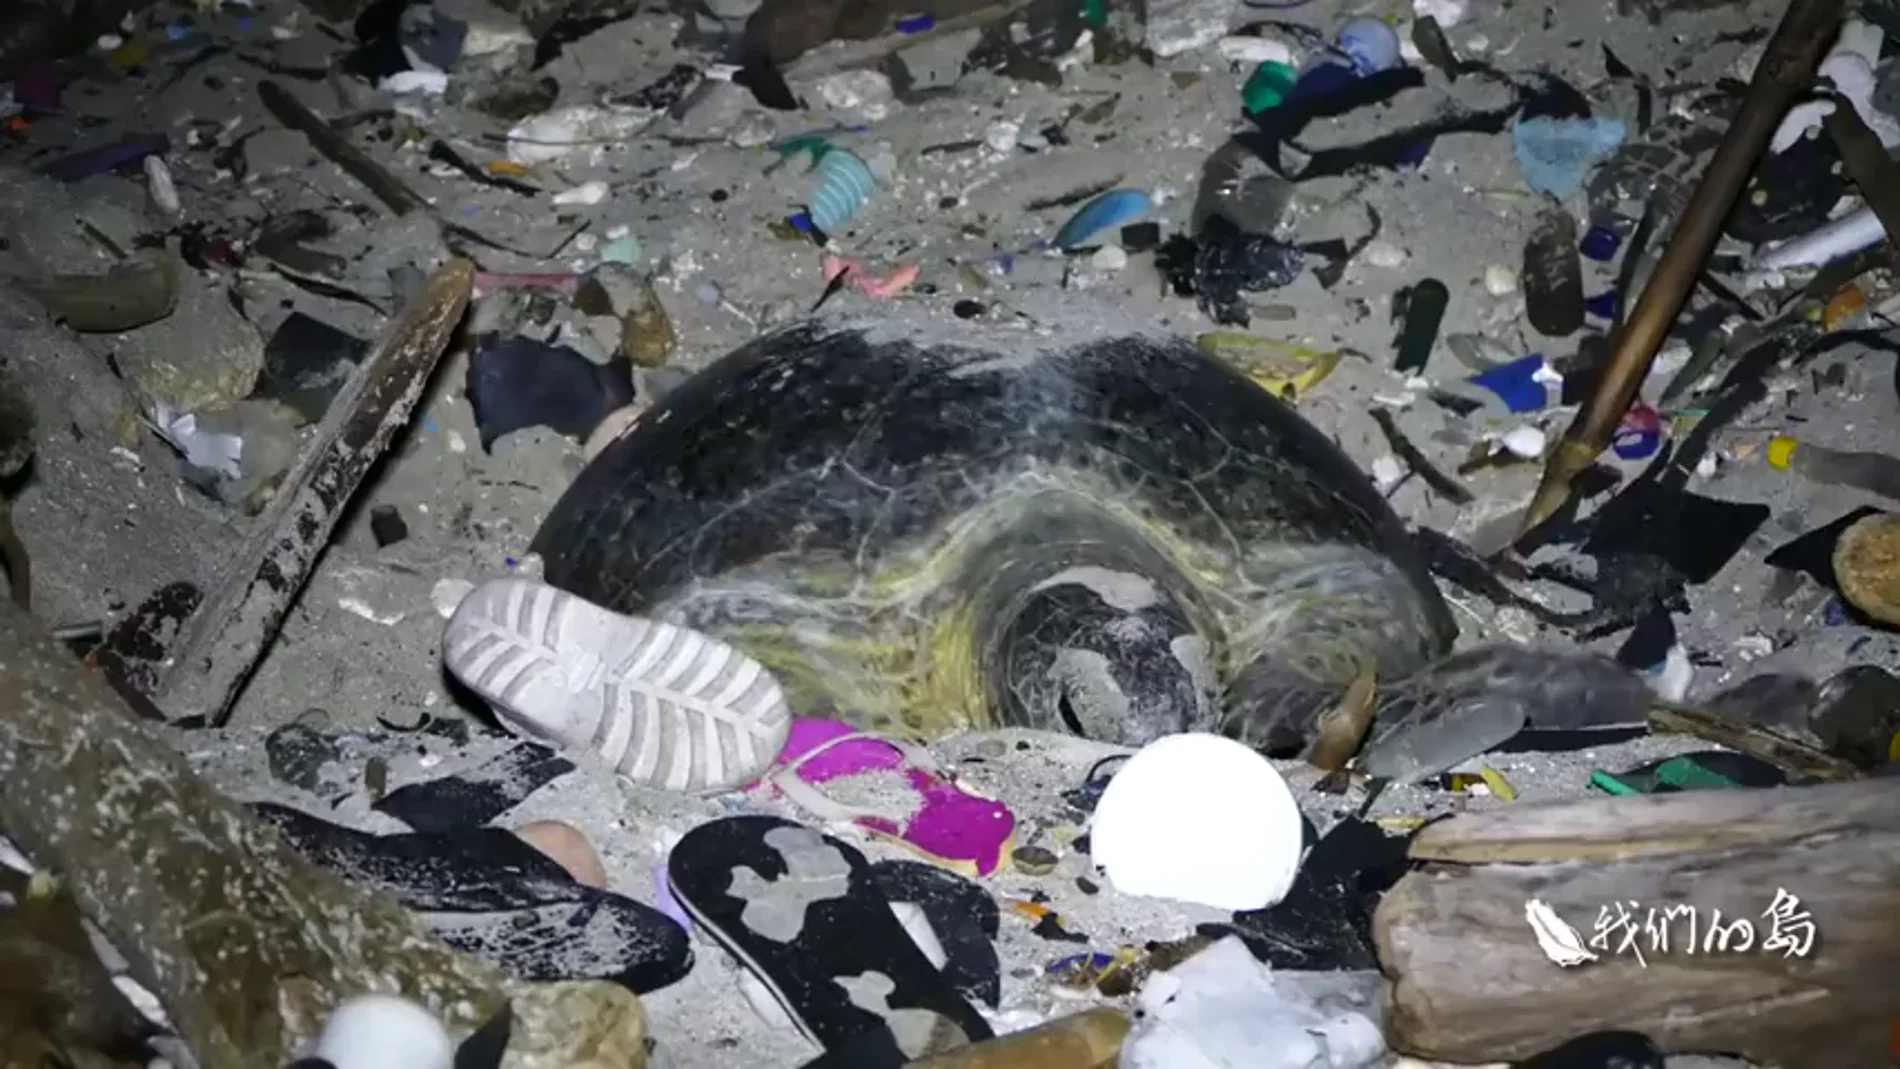 Las indignantes imágenes de una tortuga intentando anidar en una playa llena de basura